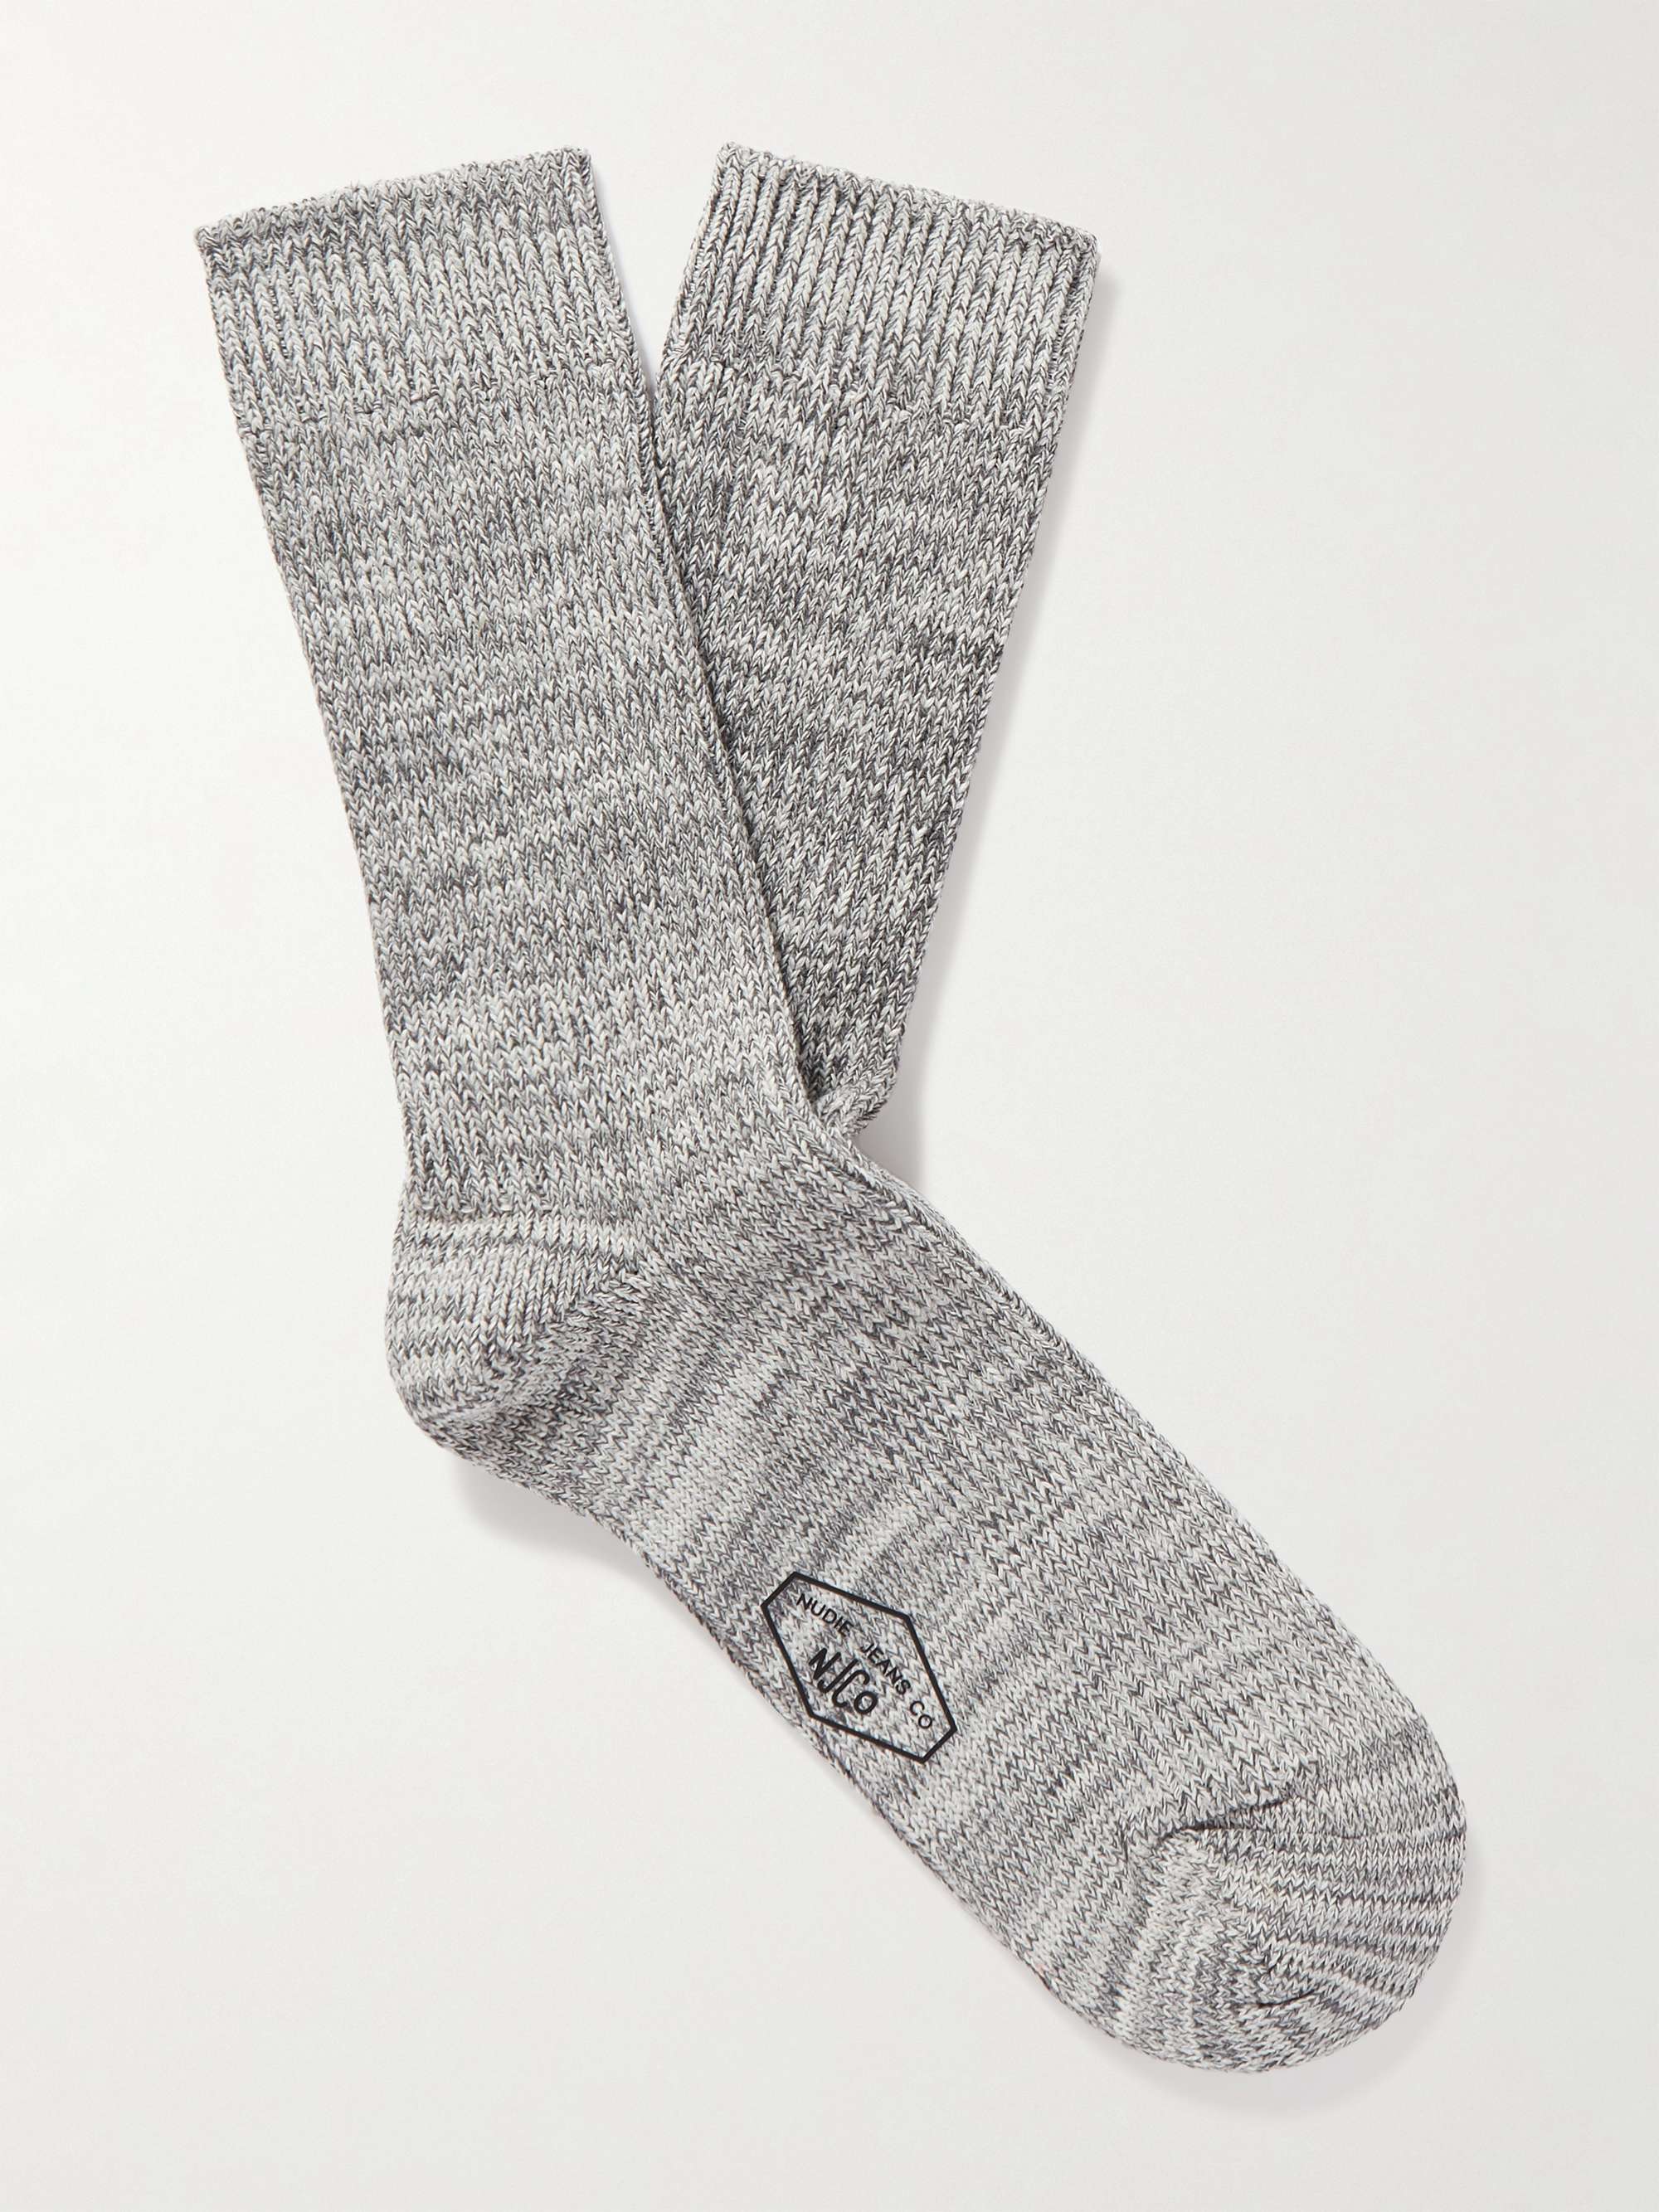 NUDIE JEANS Knitted Socks for Men | MR PORTER